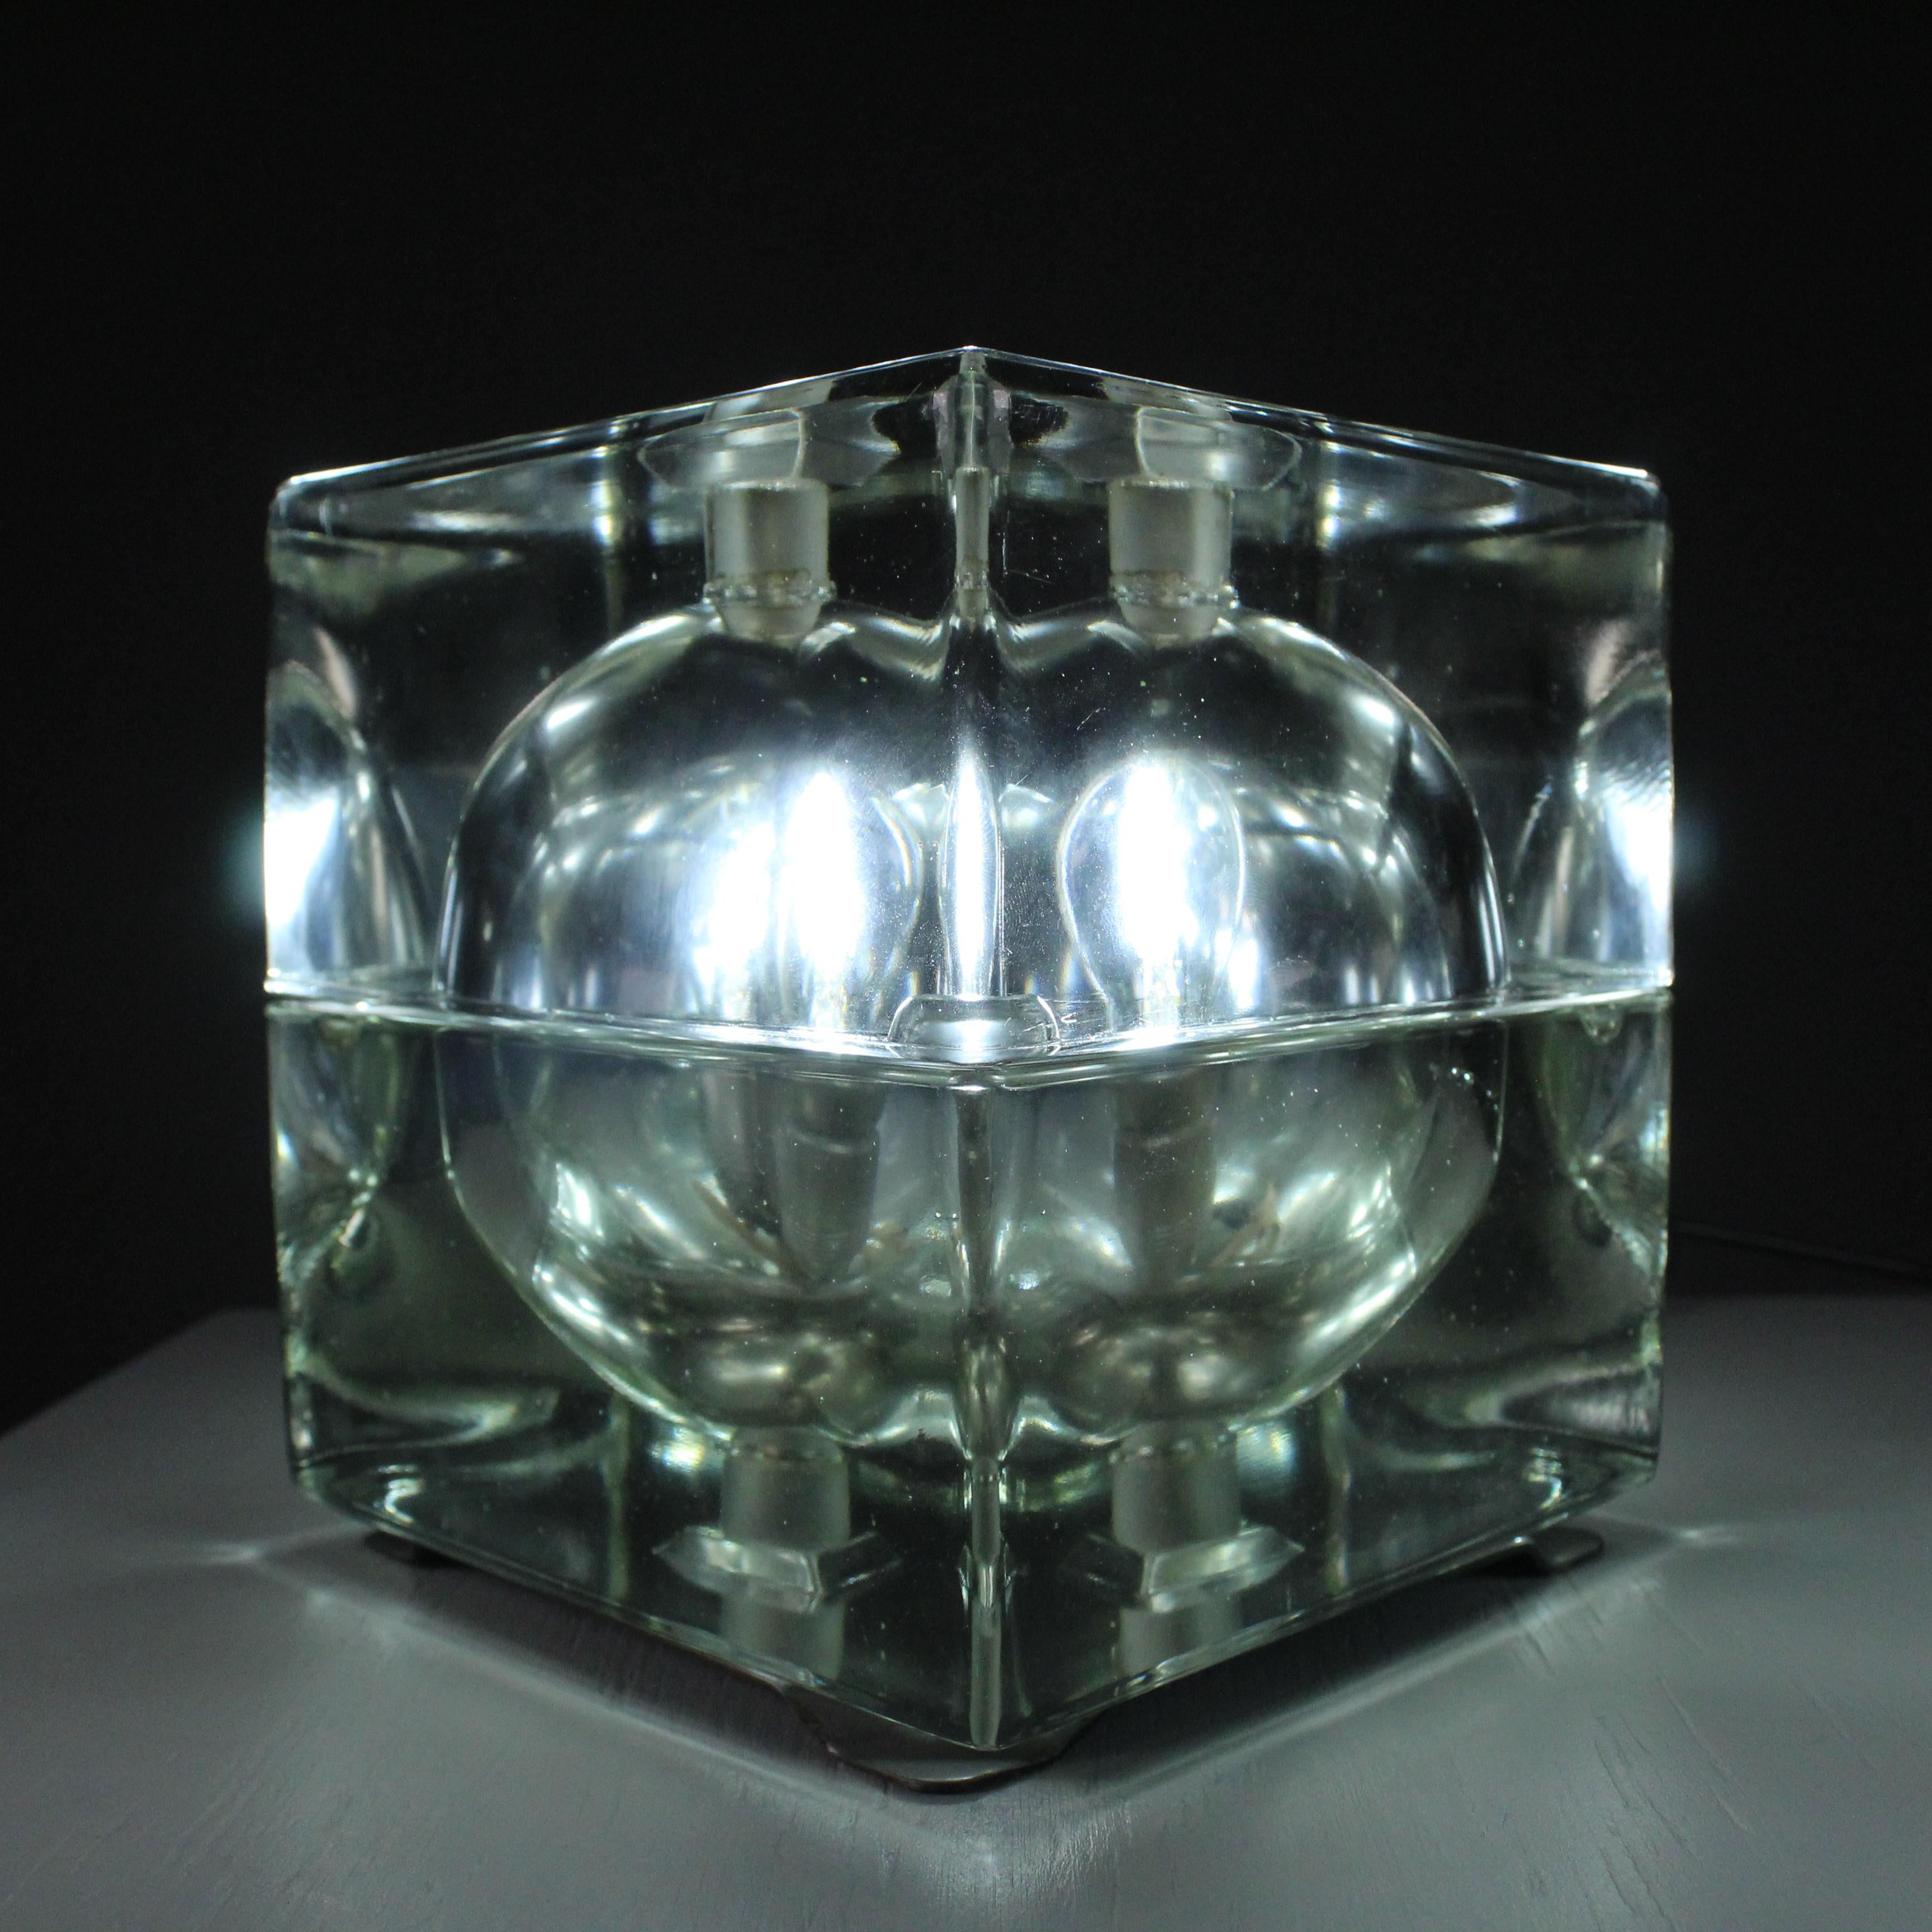 La lampada Cubosfera è effettivamente un design notevole creato dall’architetto e designer italiano Alessandro Mendini nel 1980. Questa lampada iconica presenta una forma sferica composta da quadrati di diversi colori, conferendole un’estetica